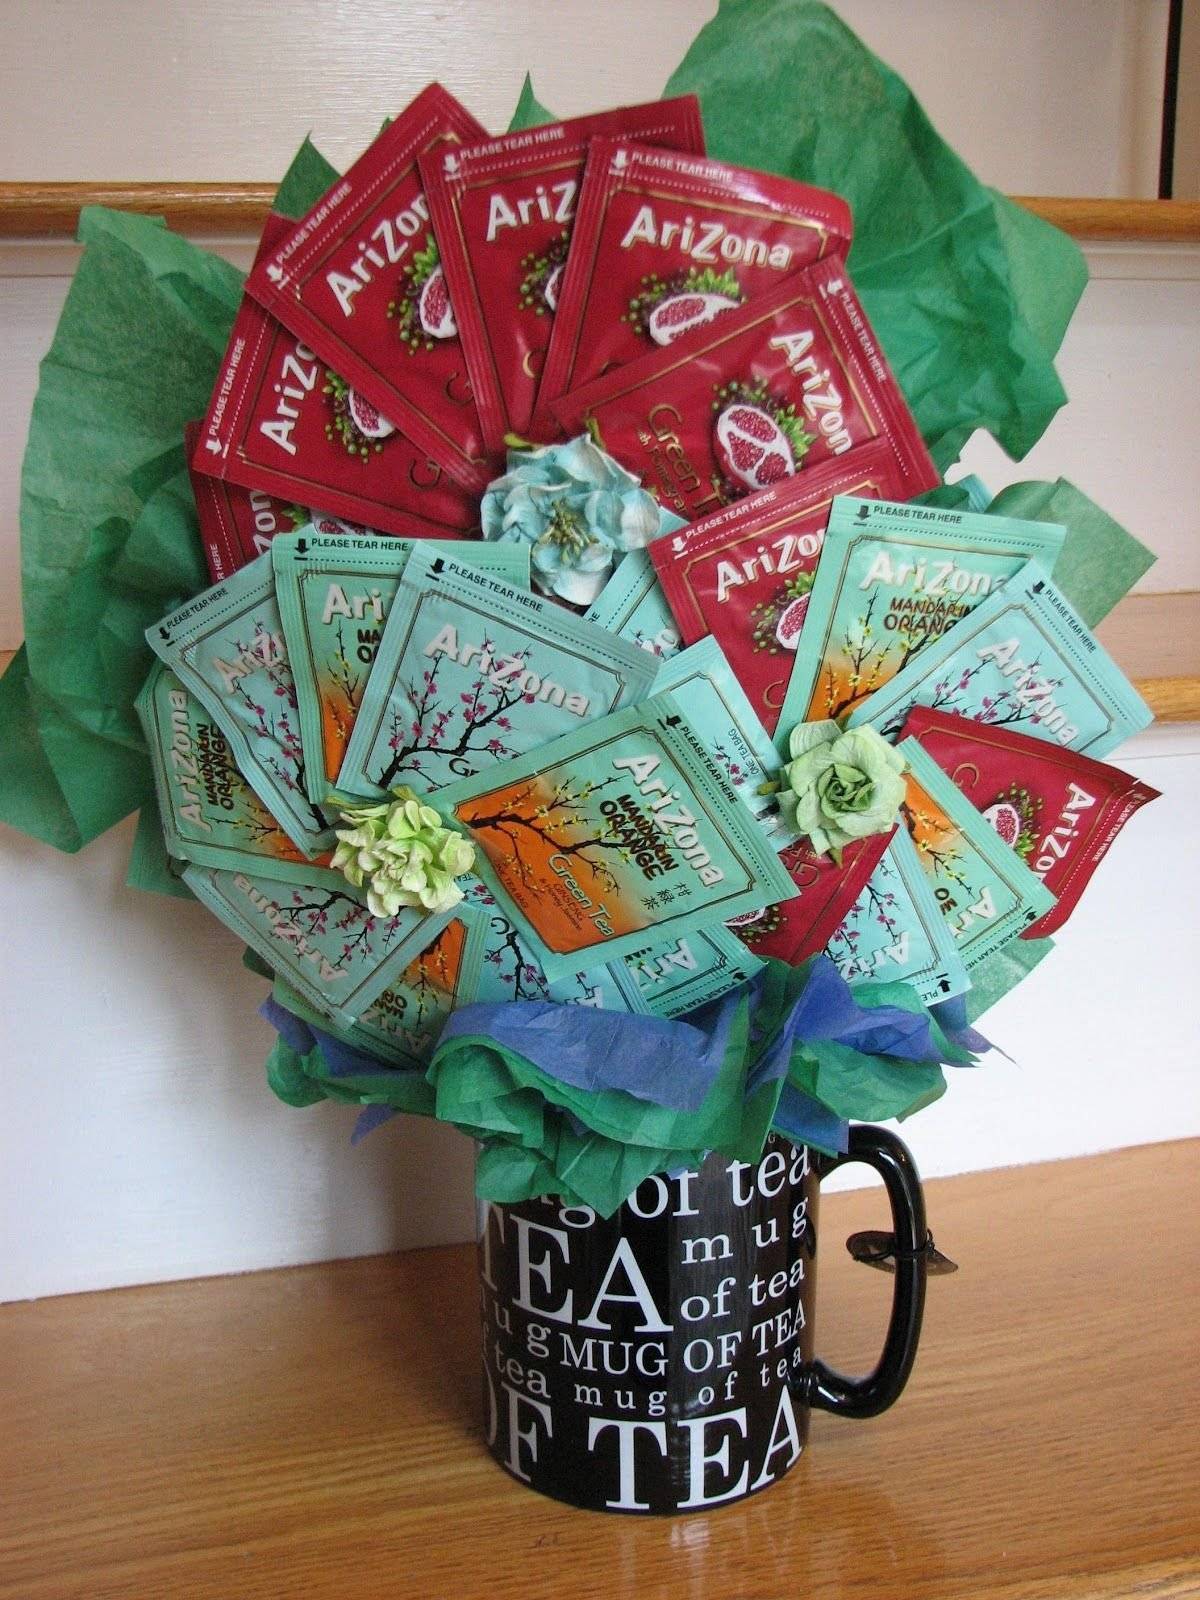 Букеты, подарки и подарочные корзины из чая, кофе, конфет своими руками: идеи, изготовление, фото. красивые букеты с конфетами и чаем, из живых цветов с чаем, из развесного и пакетиков чая: изготовление, фото